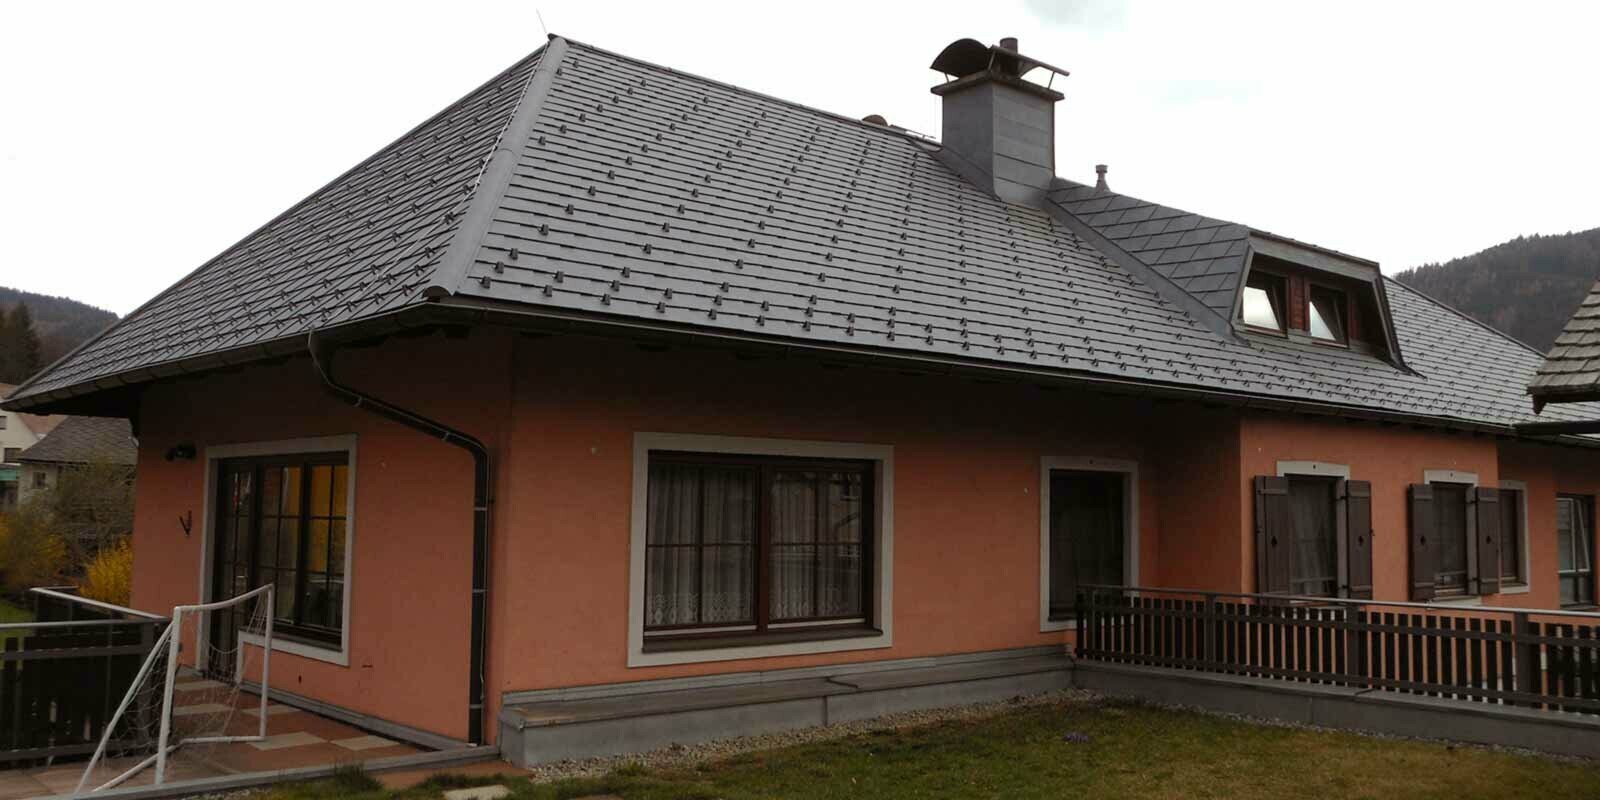 Rénovation de toiture d’une maison avec toit à croupes et lucarne en trapèze, à l’aide de bardeaux de toiture PREFA